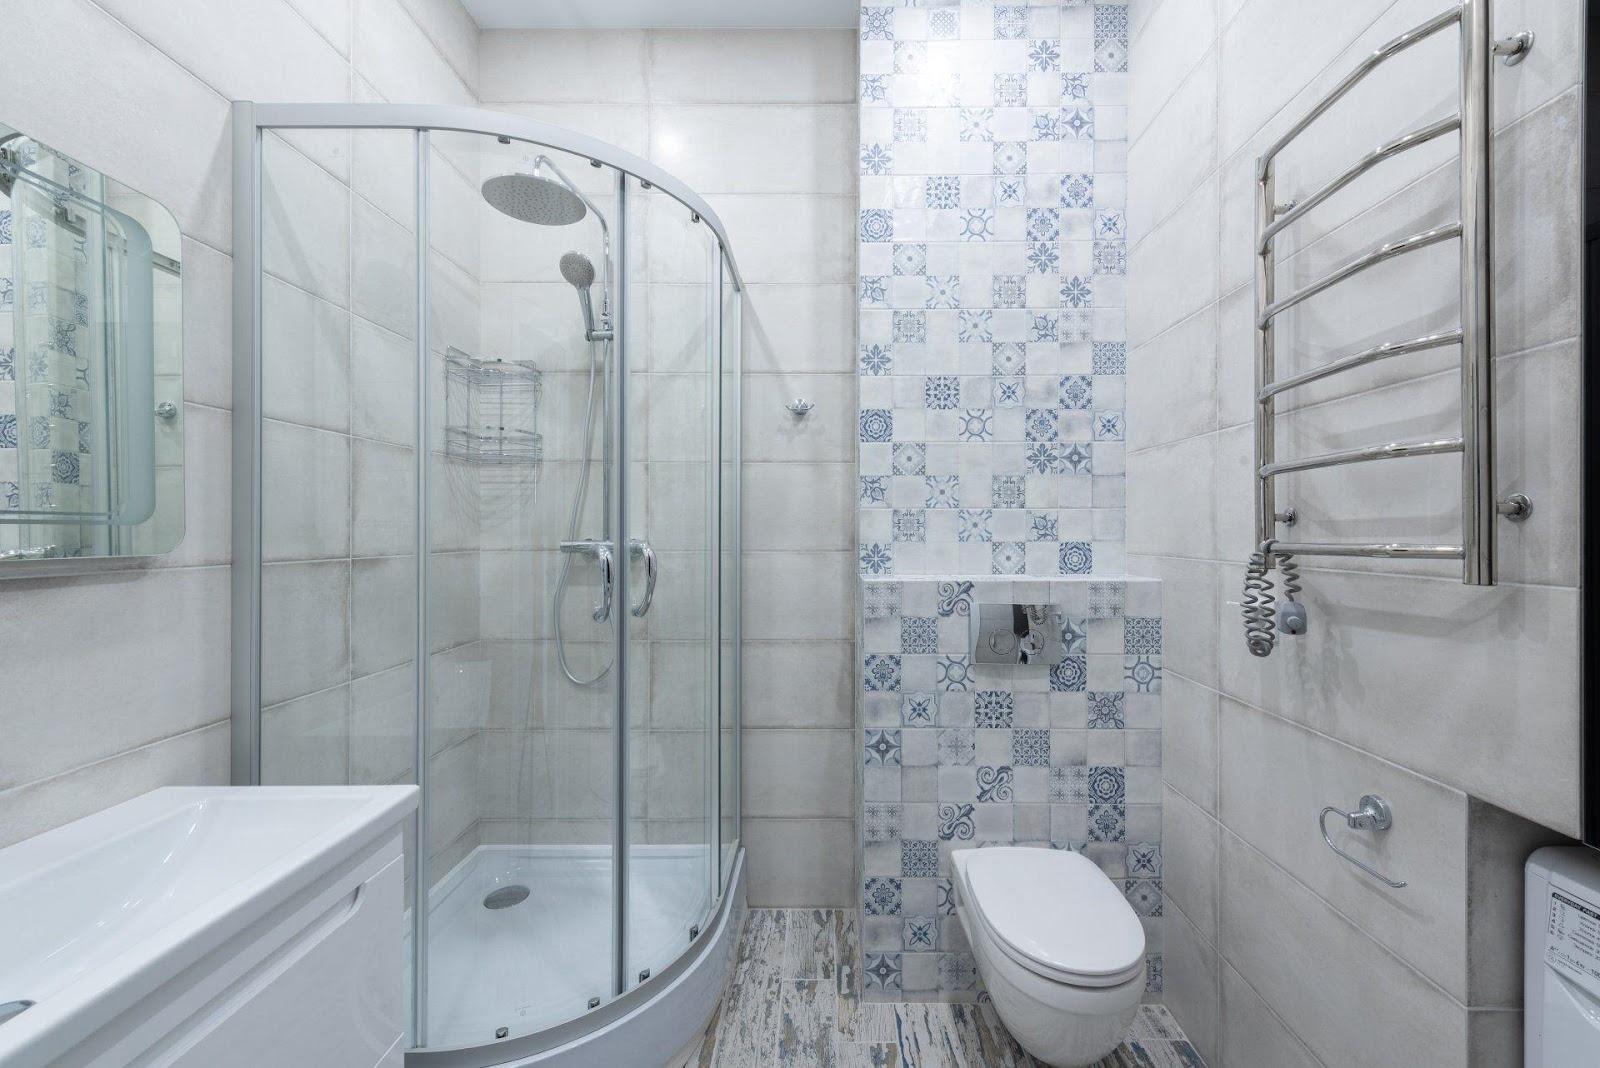 Uma imagem com casa de banho, interior, parede, branco

Descrição gerada automaticamente